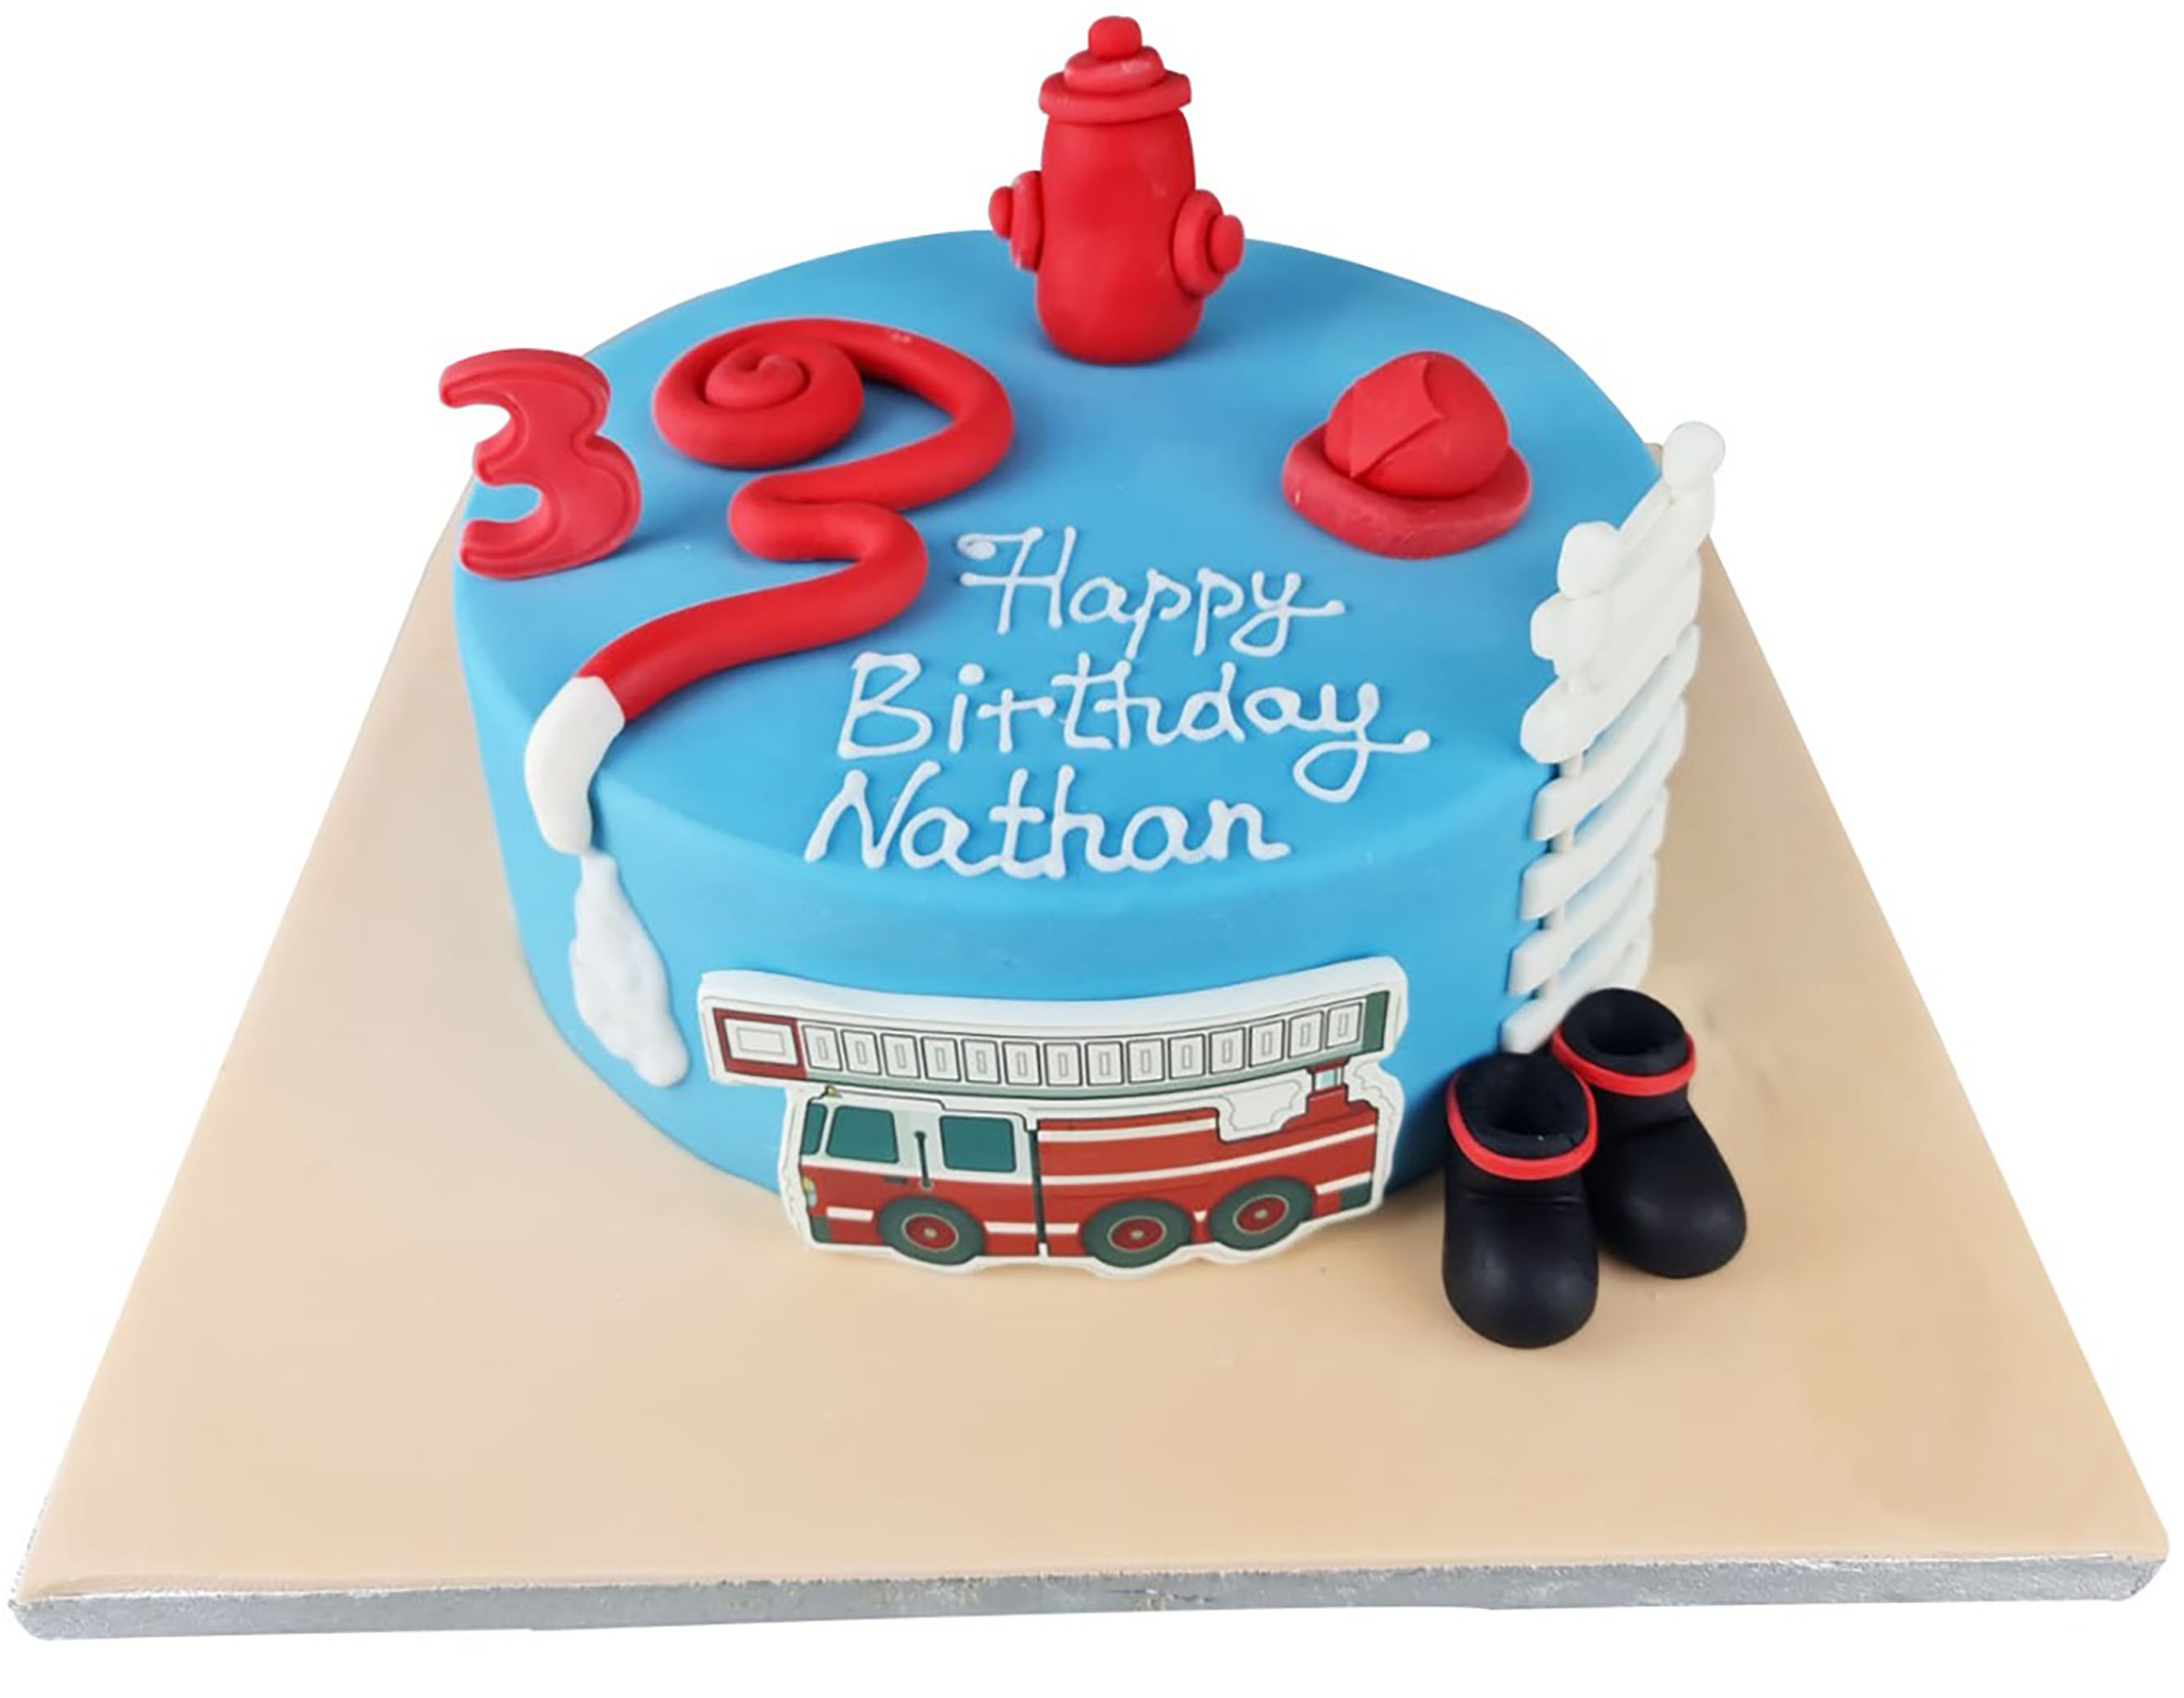 Fireman 3rd Birthday Cake For Kids